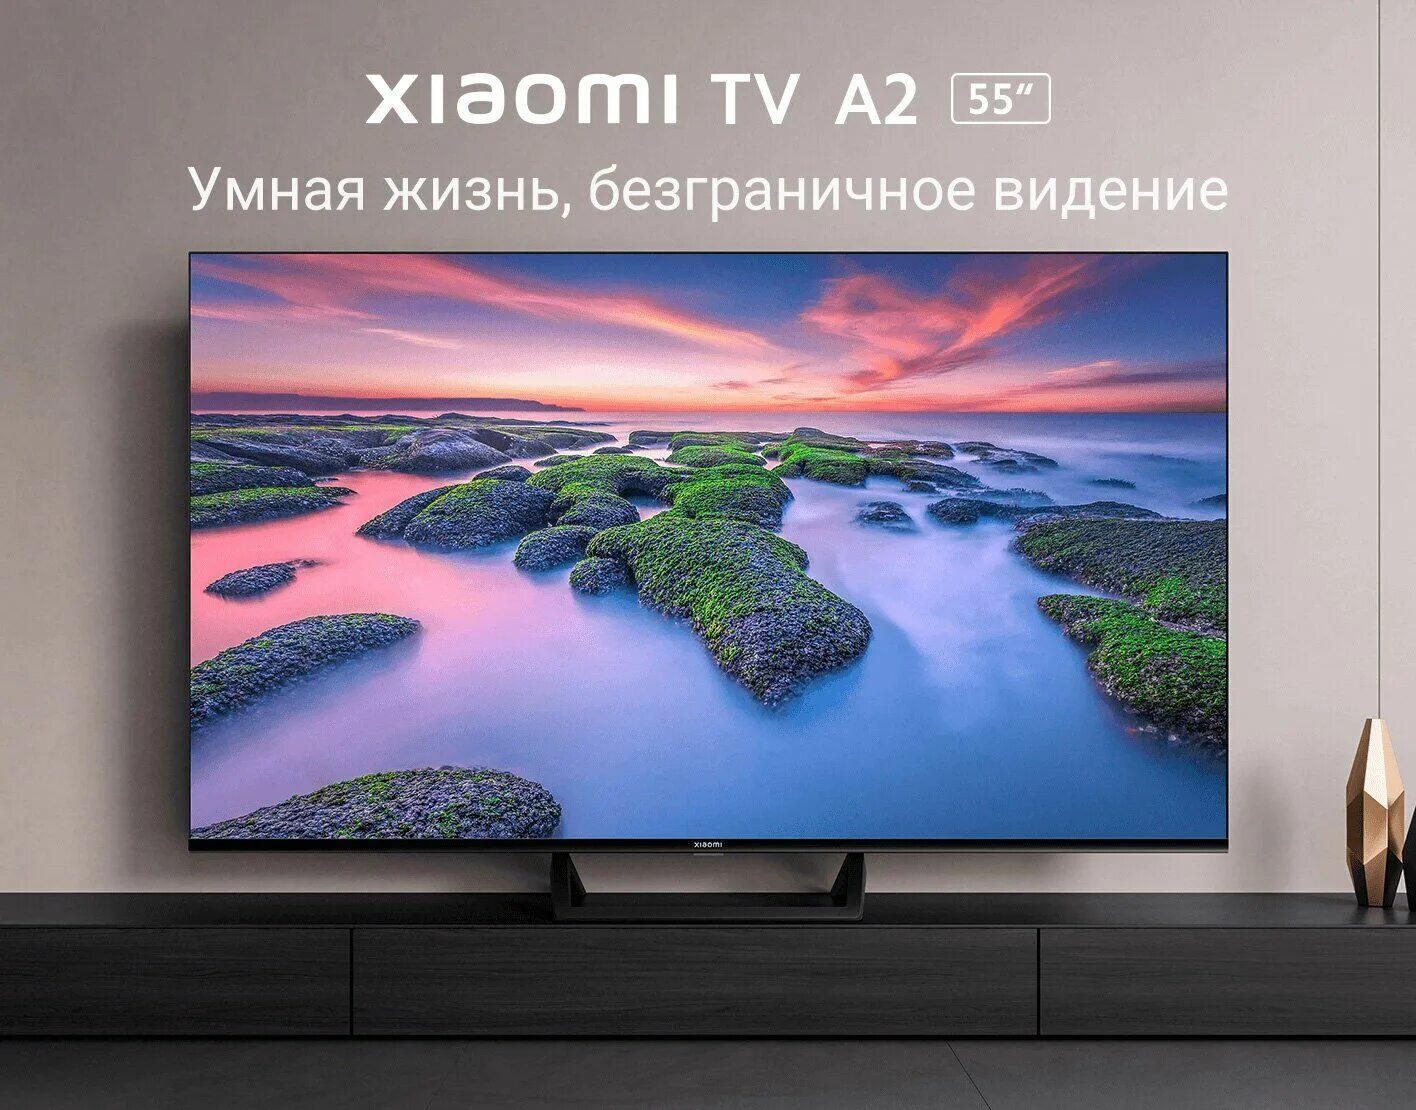 Телевизор xiaomi mi tv a2 65 led. Xiaomi a2 43 телевизор. Телевизор Xiaomi mi TV a2 50. Xiaomi TV a2 32 inch. Телевизор Xiaomi mi TV a2 32.